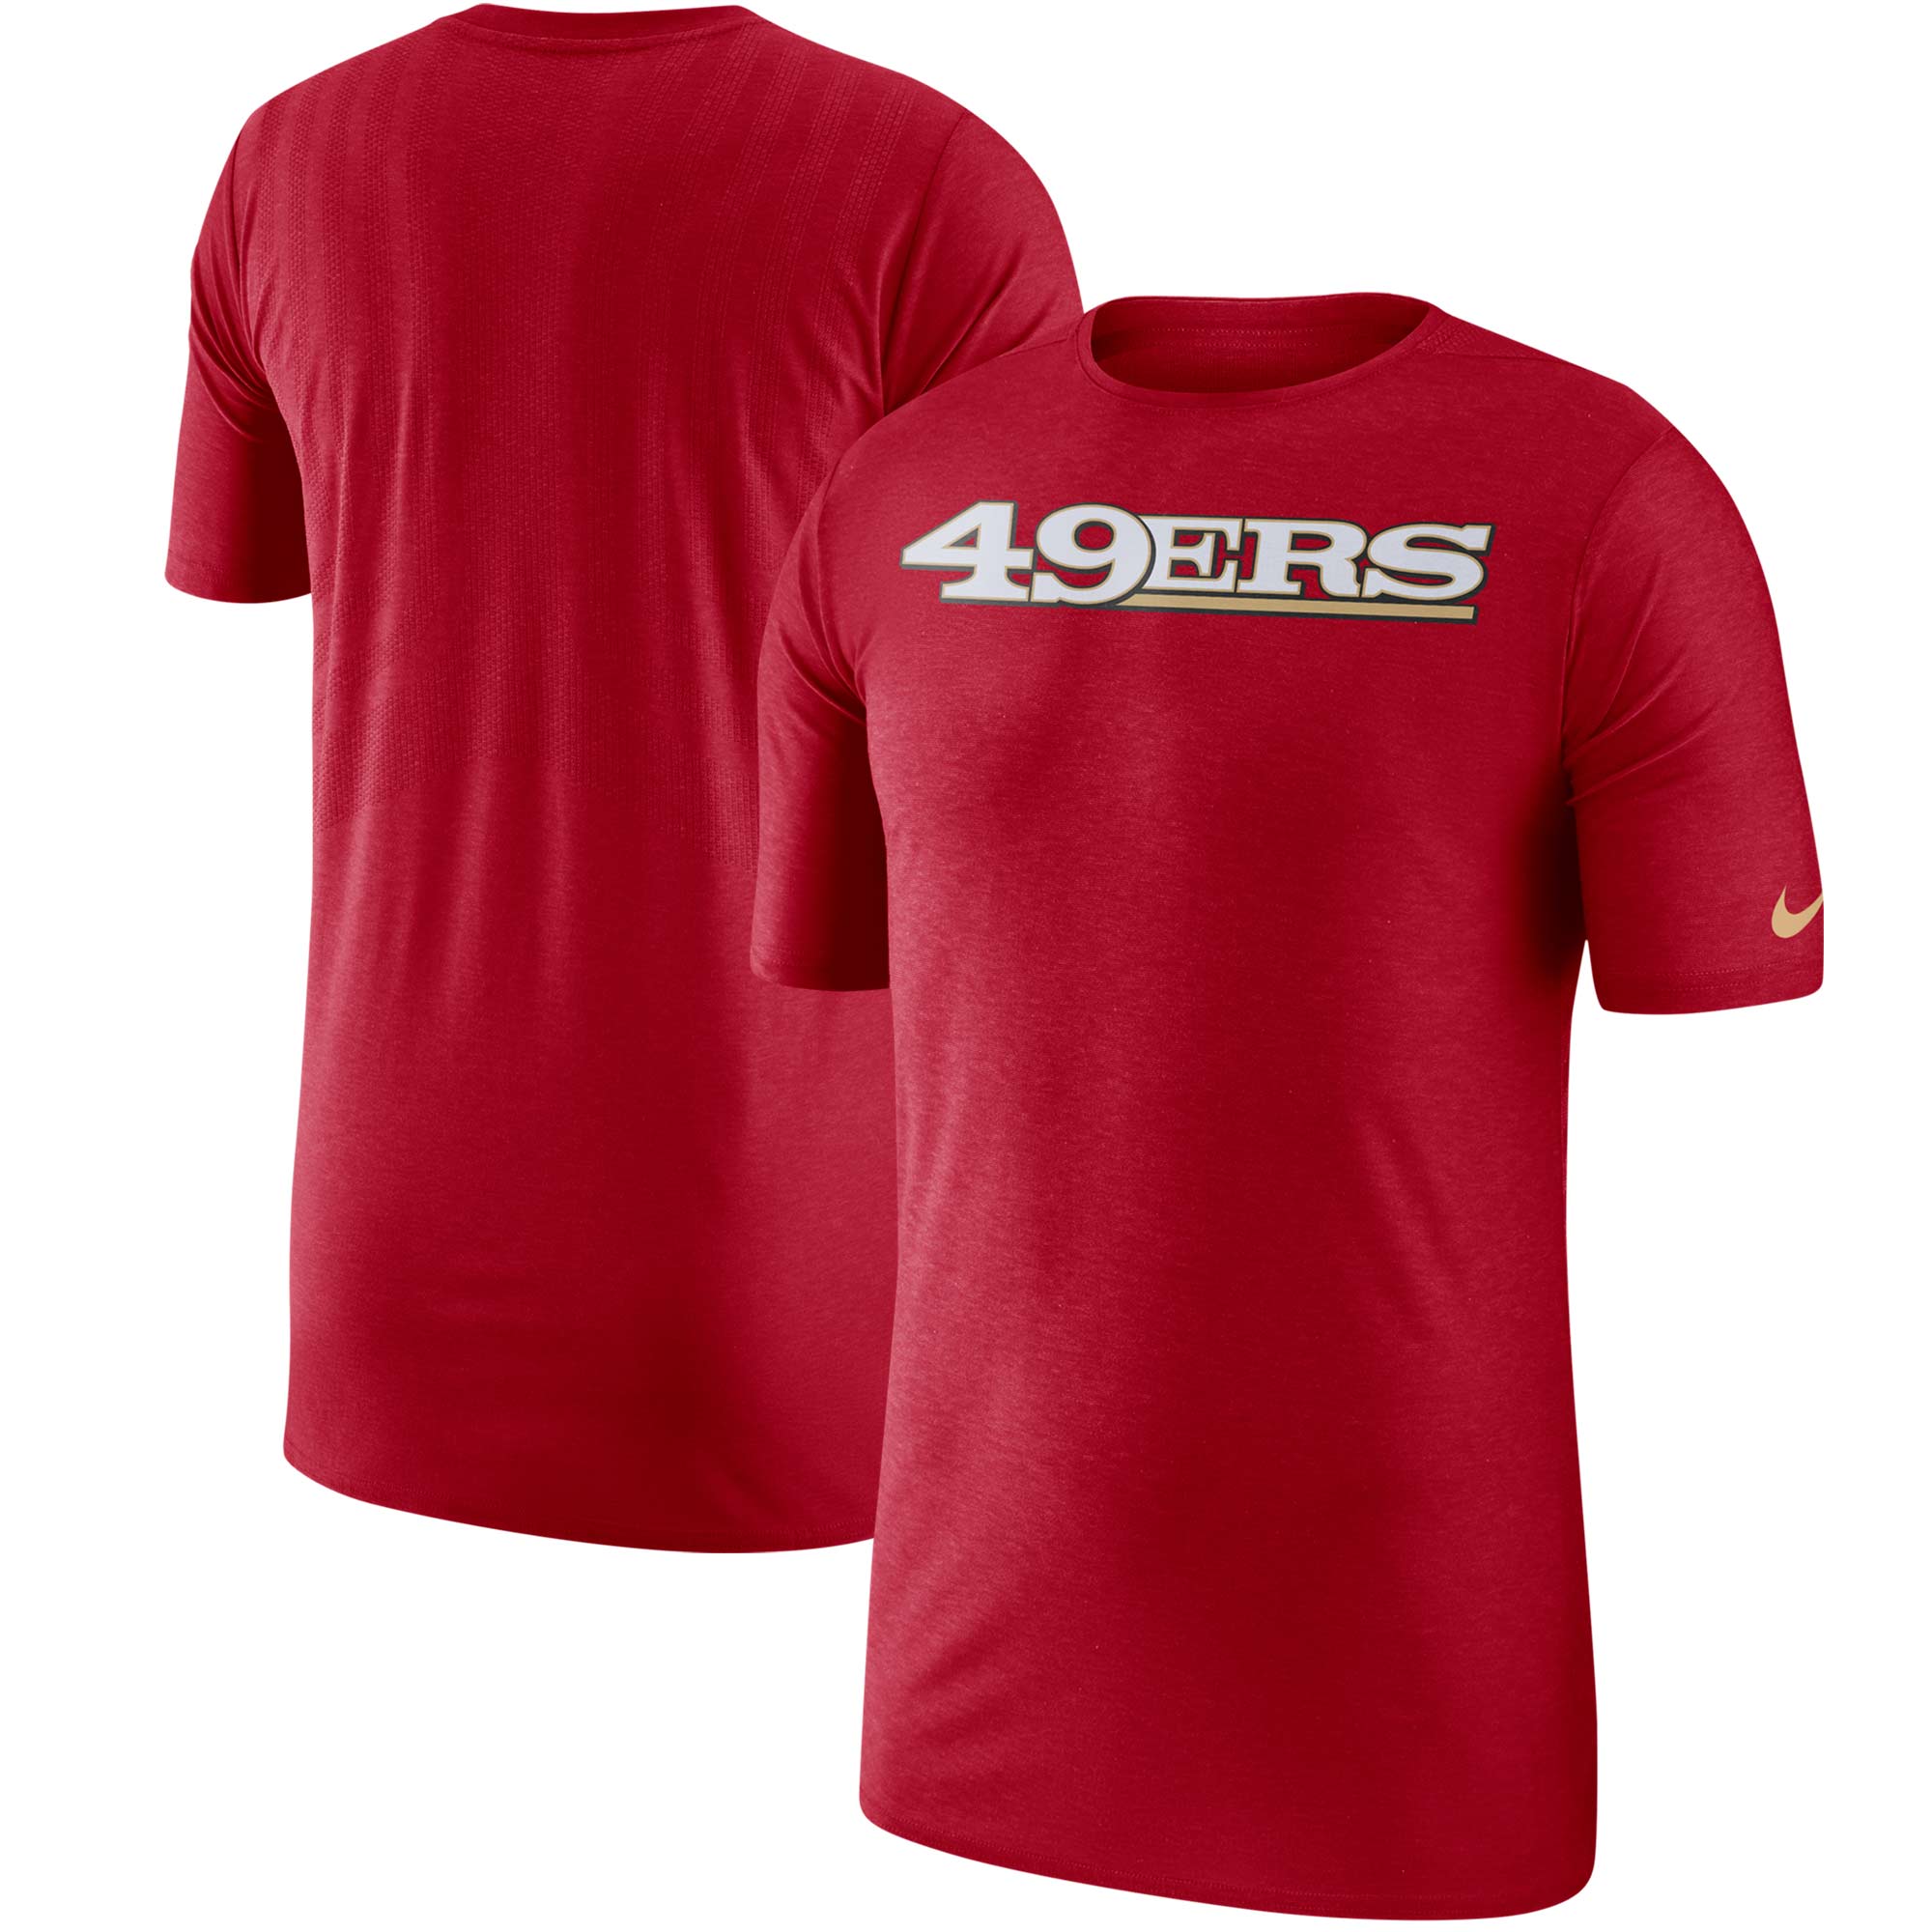 Nike 49ers Sideline T-Shirt - Men's